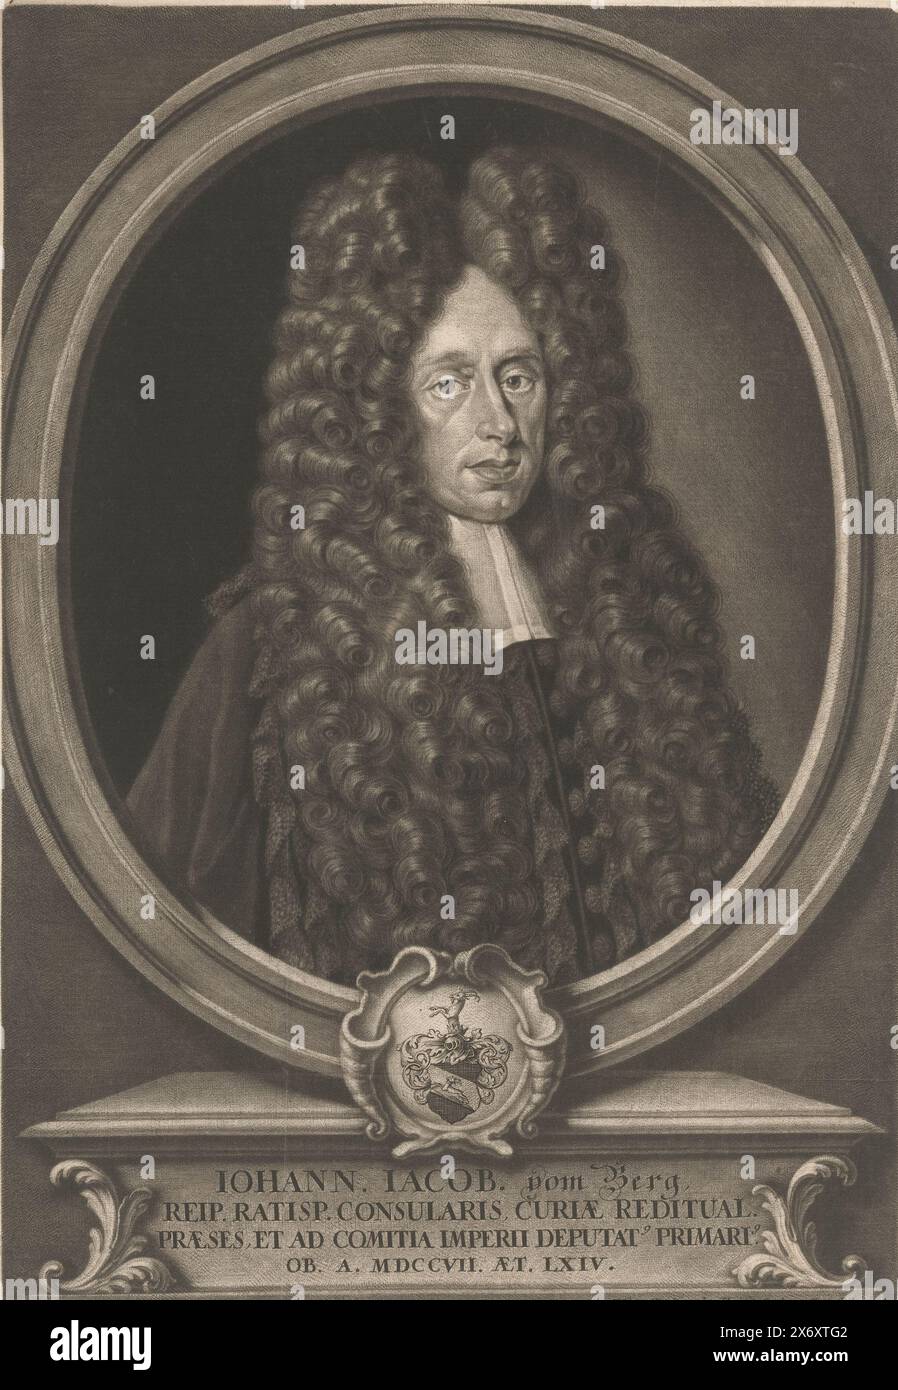 Ritratto di Johann Jacob vom Berg all'età di 64 anni, stampa, tipografo: Elias Christopf Heiss, (menzionato sull'oggetto), Augusta, 1707 - 1708, carta, altezza, 320 mm x larghezza, 218 mm Foto Stock